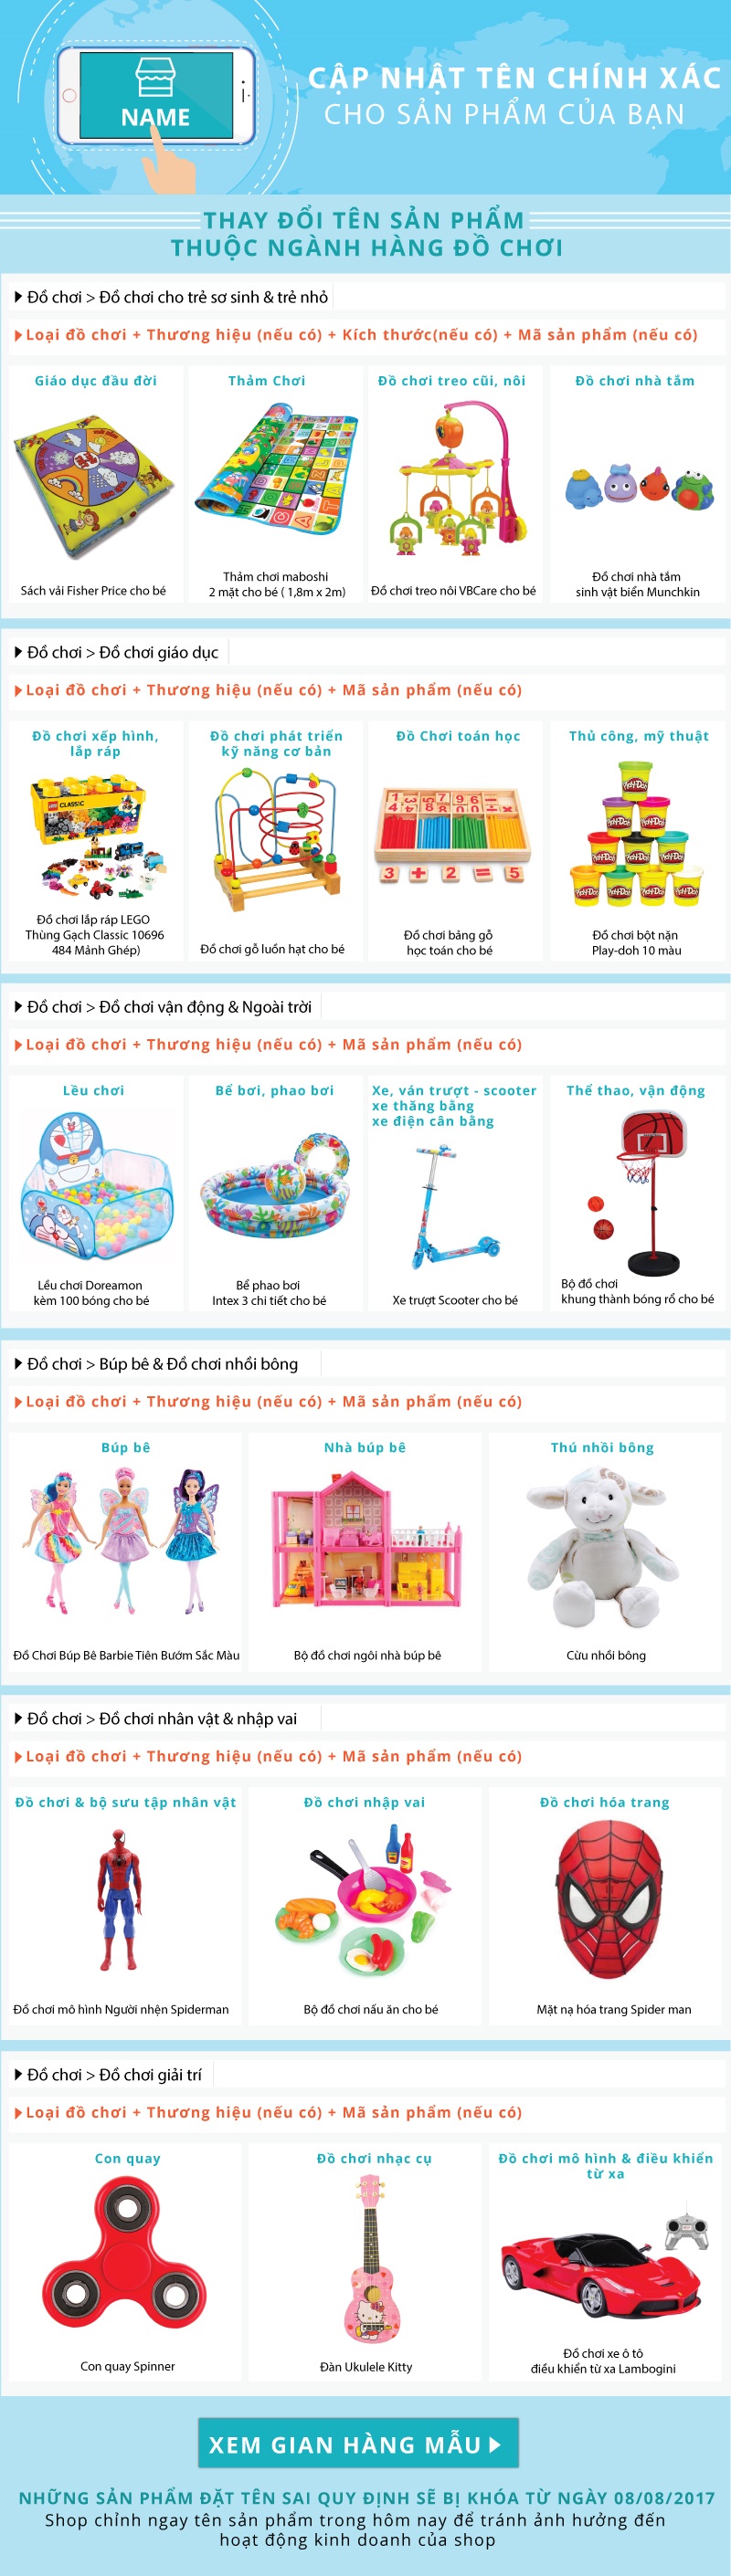 Hướng dẫn đăng bán sản phẩm đồ chơi trên Shopee